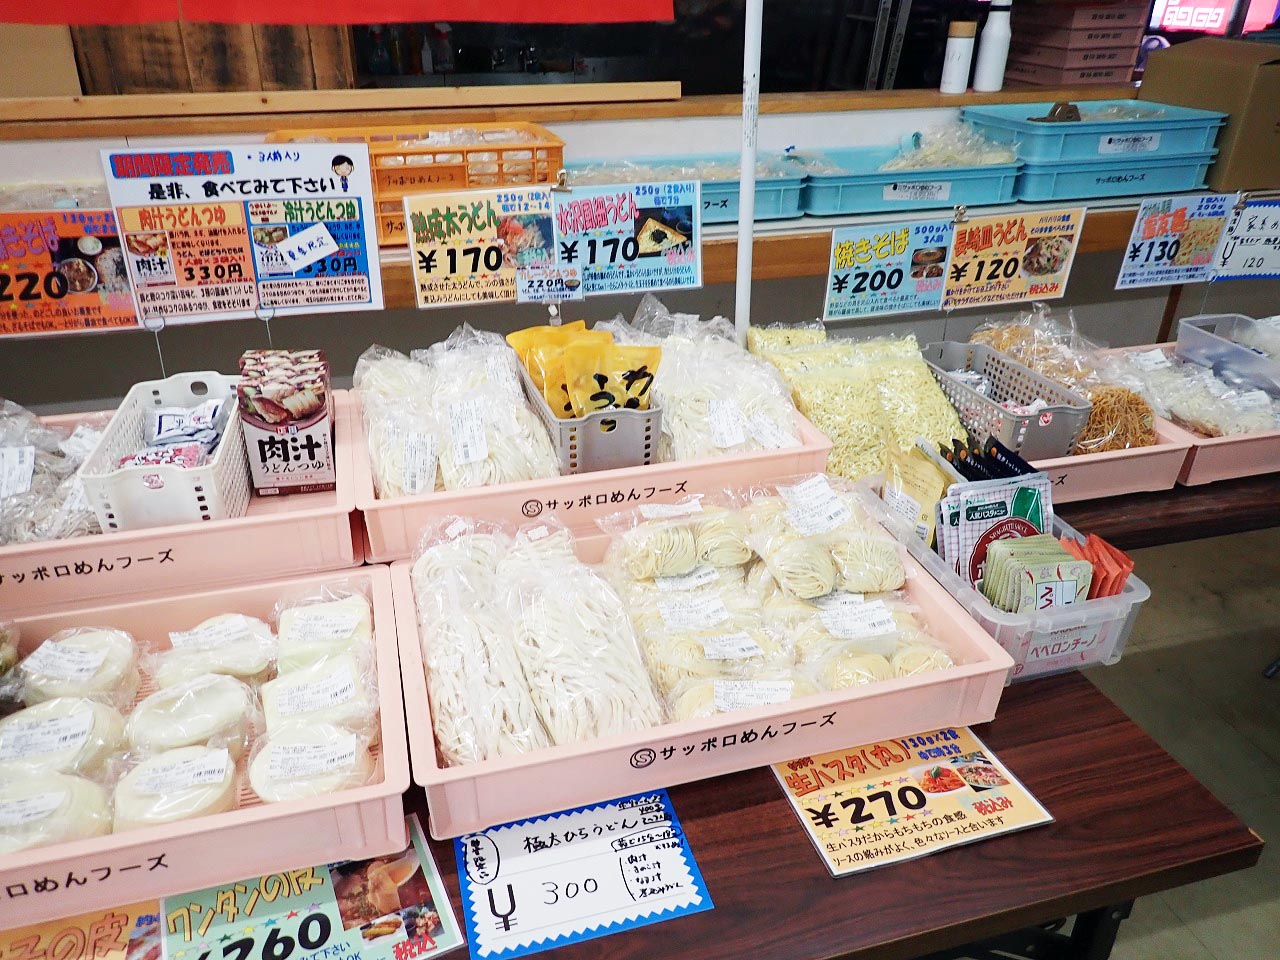 お値打ち価格で麺を買える『株式会社サッポロめんフーズ 川越工場』